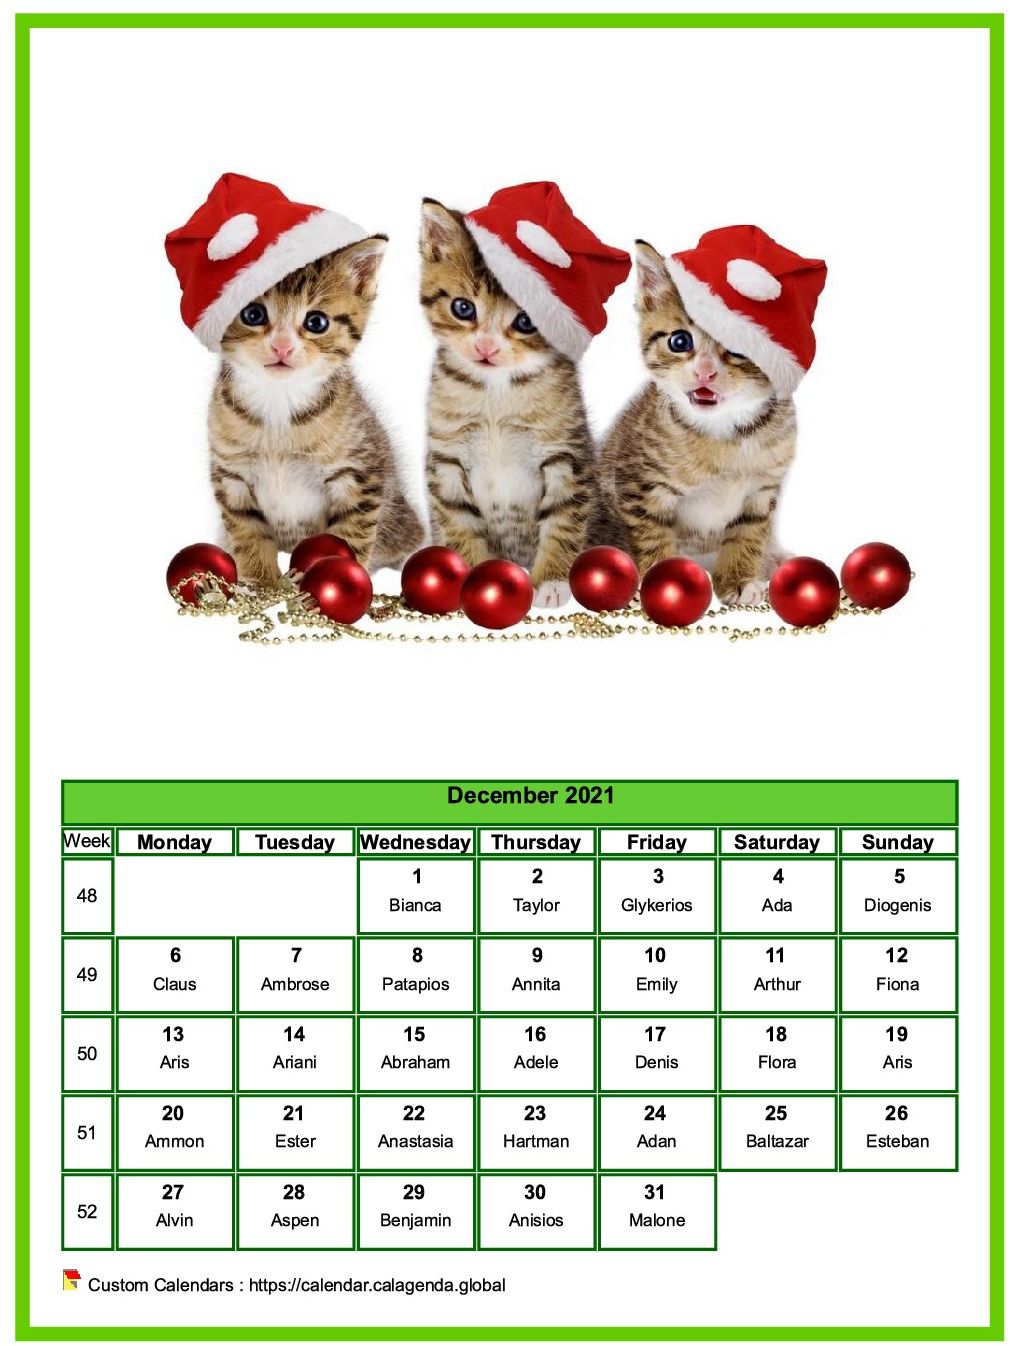 Calendar December 2021 cats